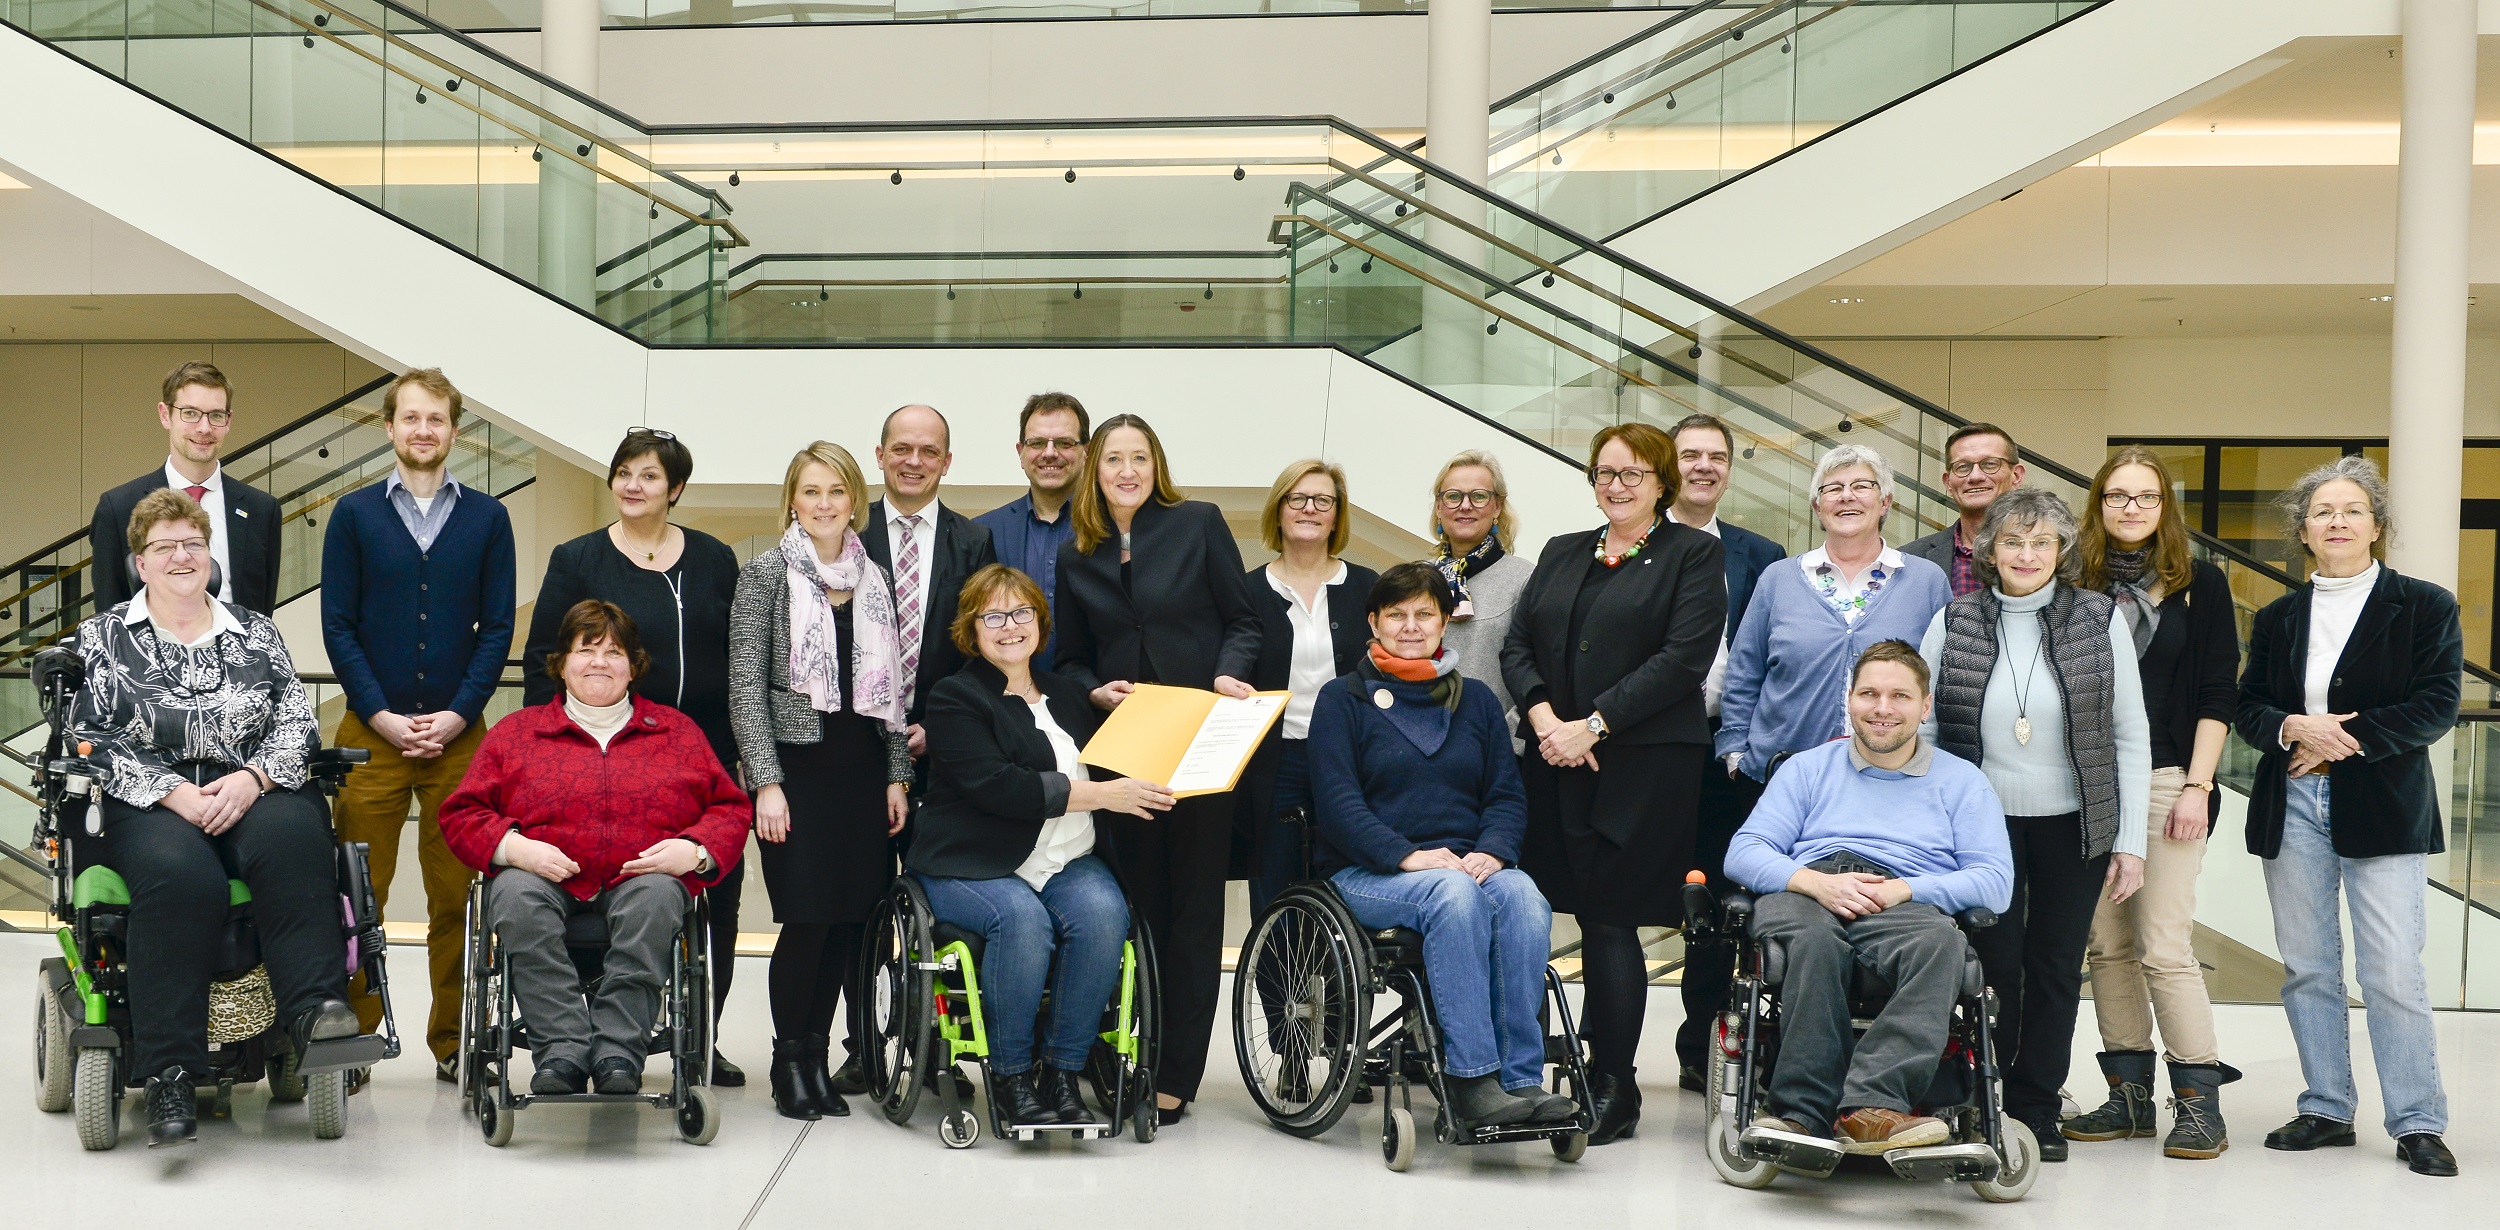 Die Mitglieder des Landesbeirats für Menschen mit Behinderungen sind mit der Landtagspräsidentin Dr. Gabriele Andretta und der Landesbeauftragten Petra Wontorra in der Mitte zu einem Gruppenbild versammelt. 